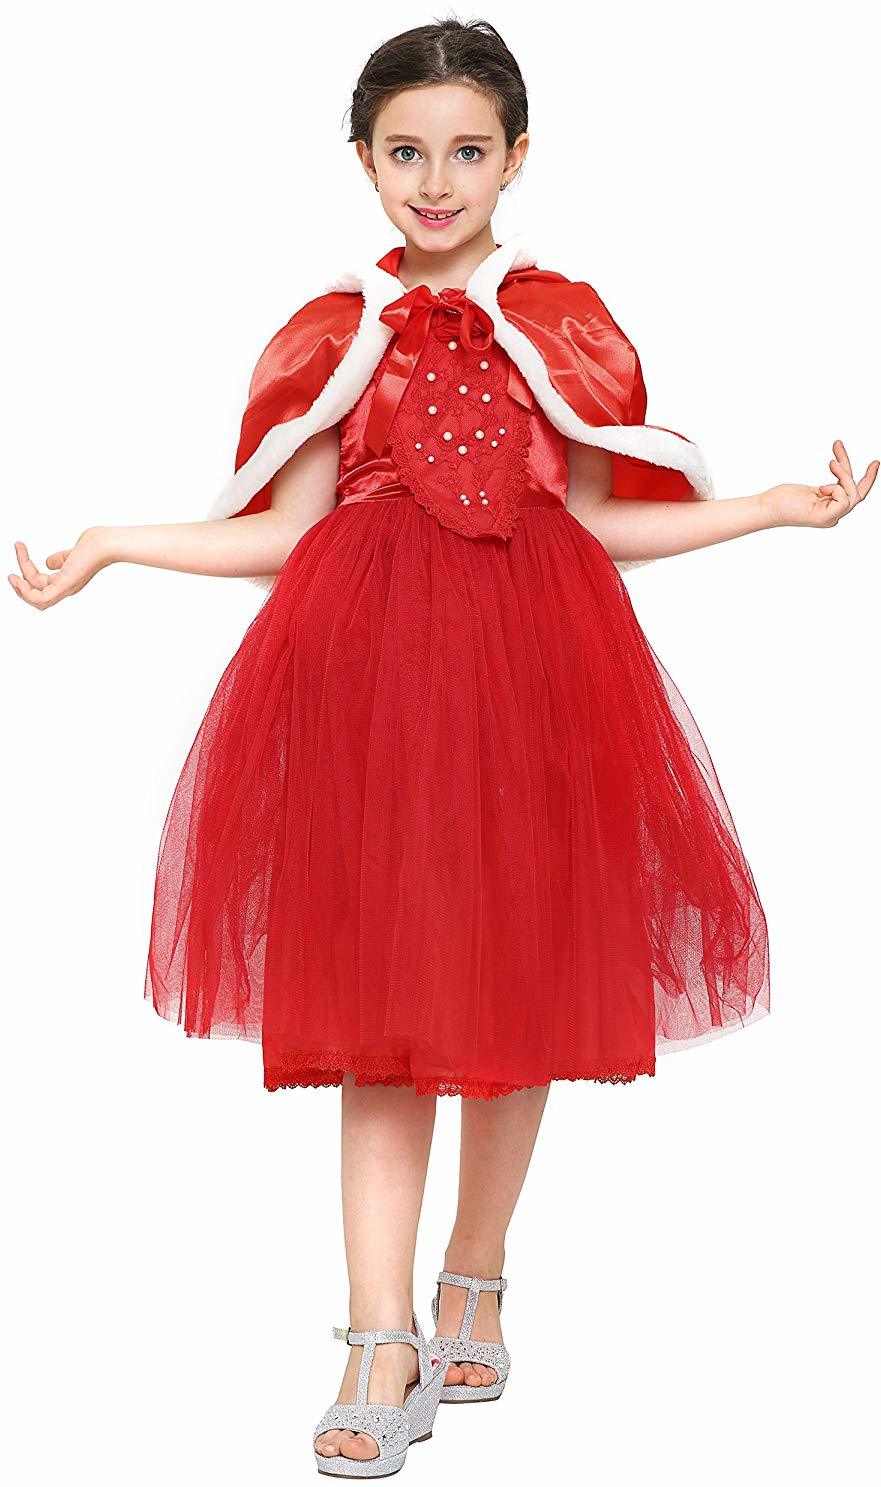 Katara 1681 Prächtiges Mädchenkostüm Prinzessinnenkleid mit viel Tüll / Winter-Kleid für Kinder an Karneval, Fasching, Fastnacht